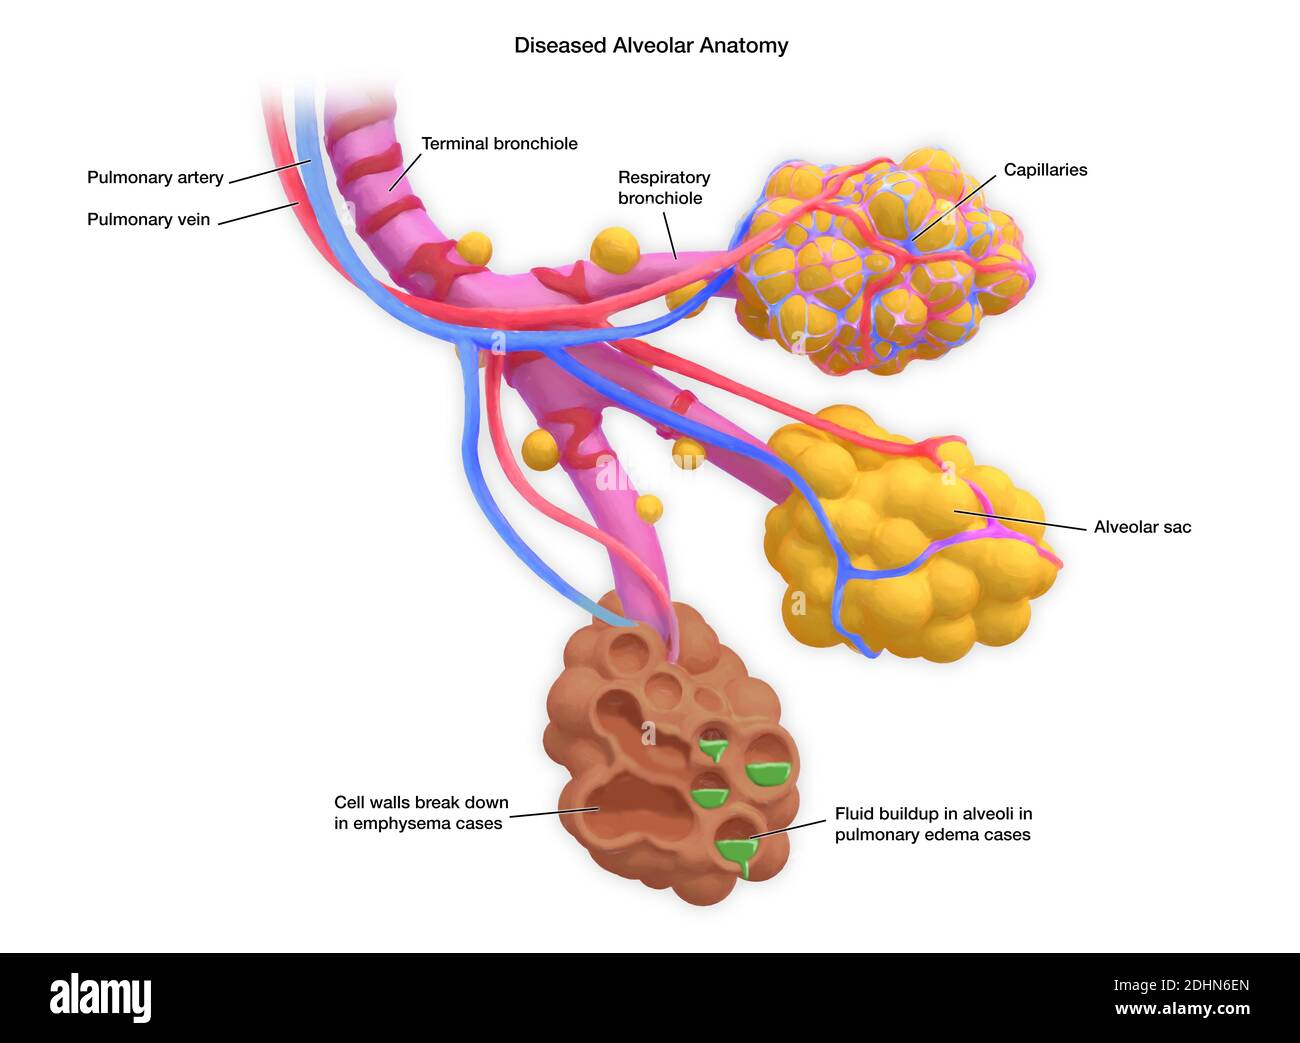 Annotato Illustrazione di alveoli umani malati. Gli alveoli sono sacche d'aria nei polmoni, alle estremità dei bronchioli, che consentono lo scambio di ca Foto Stock